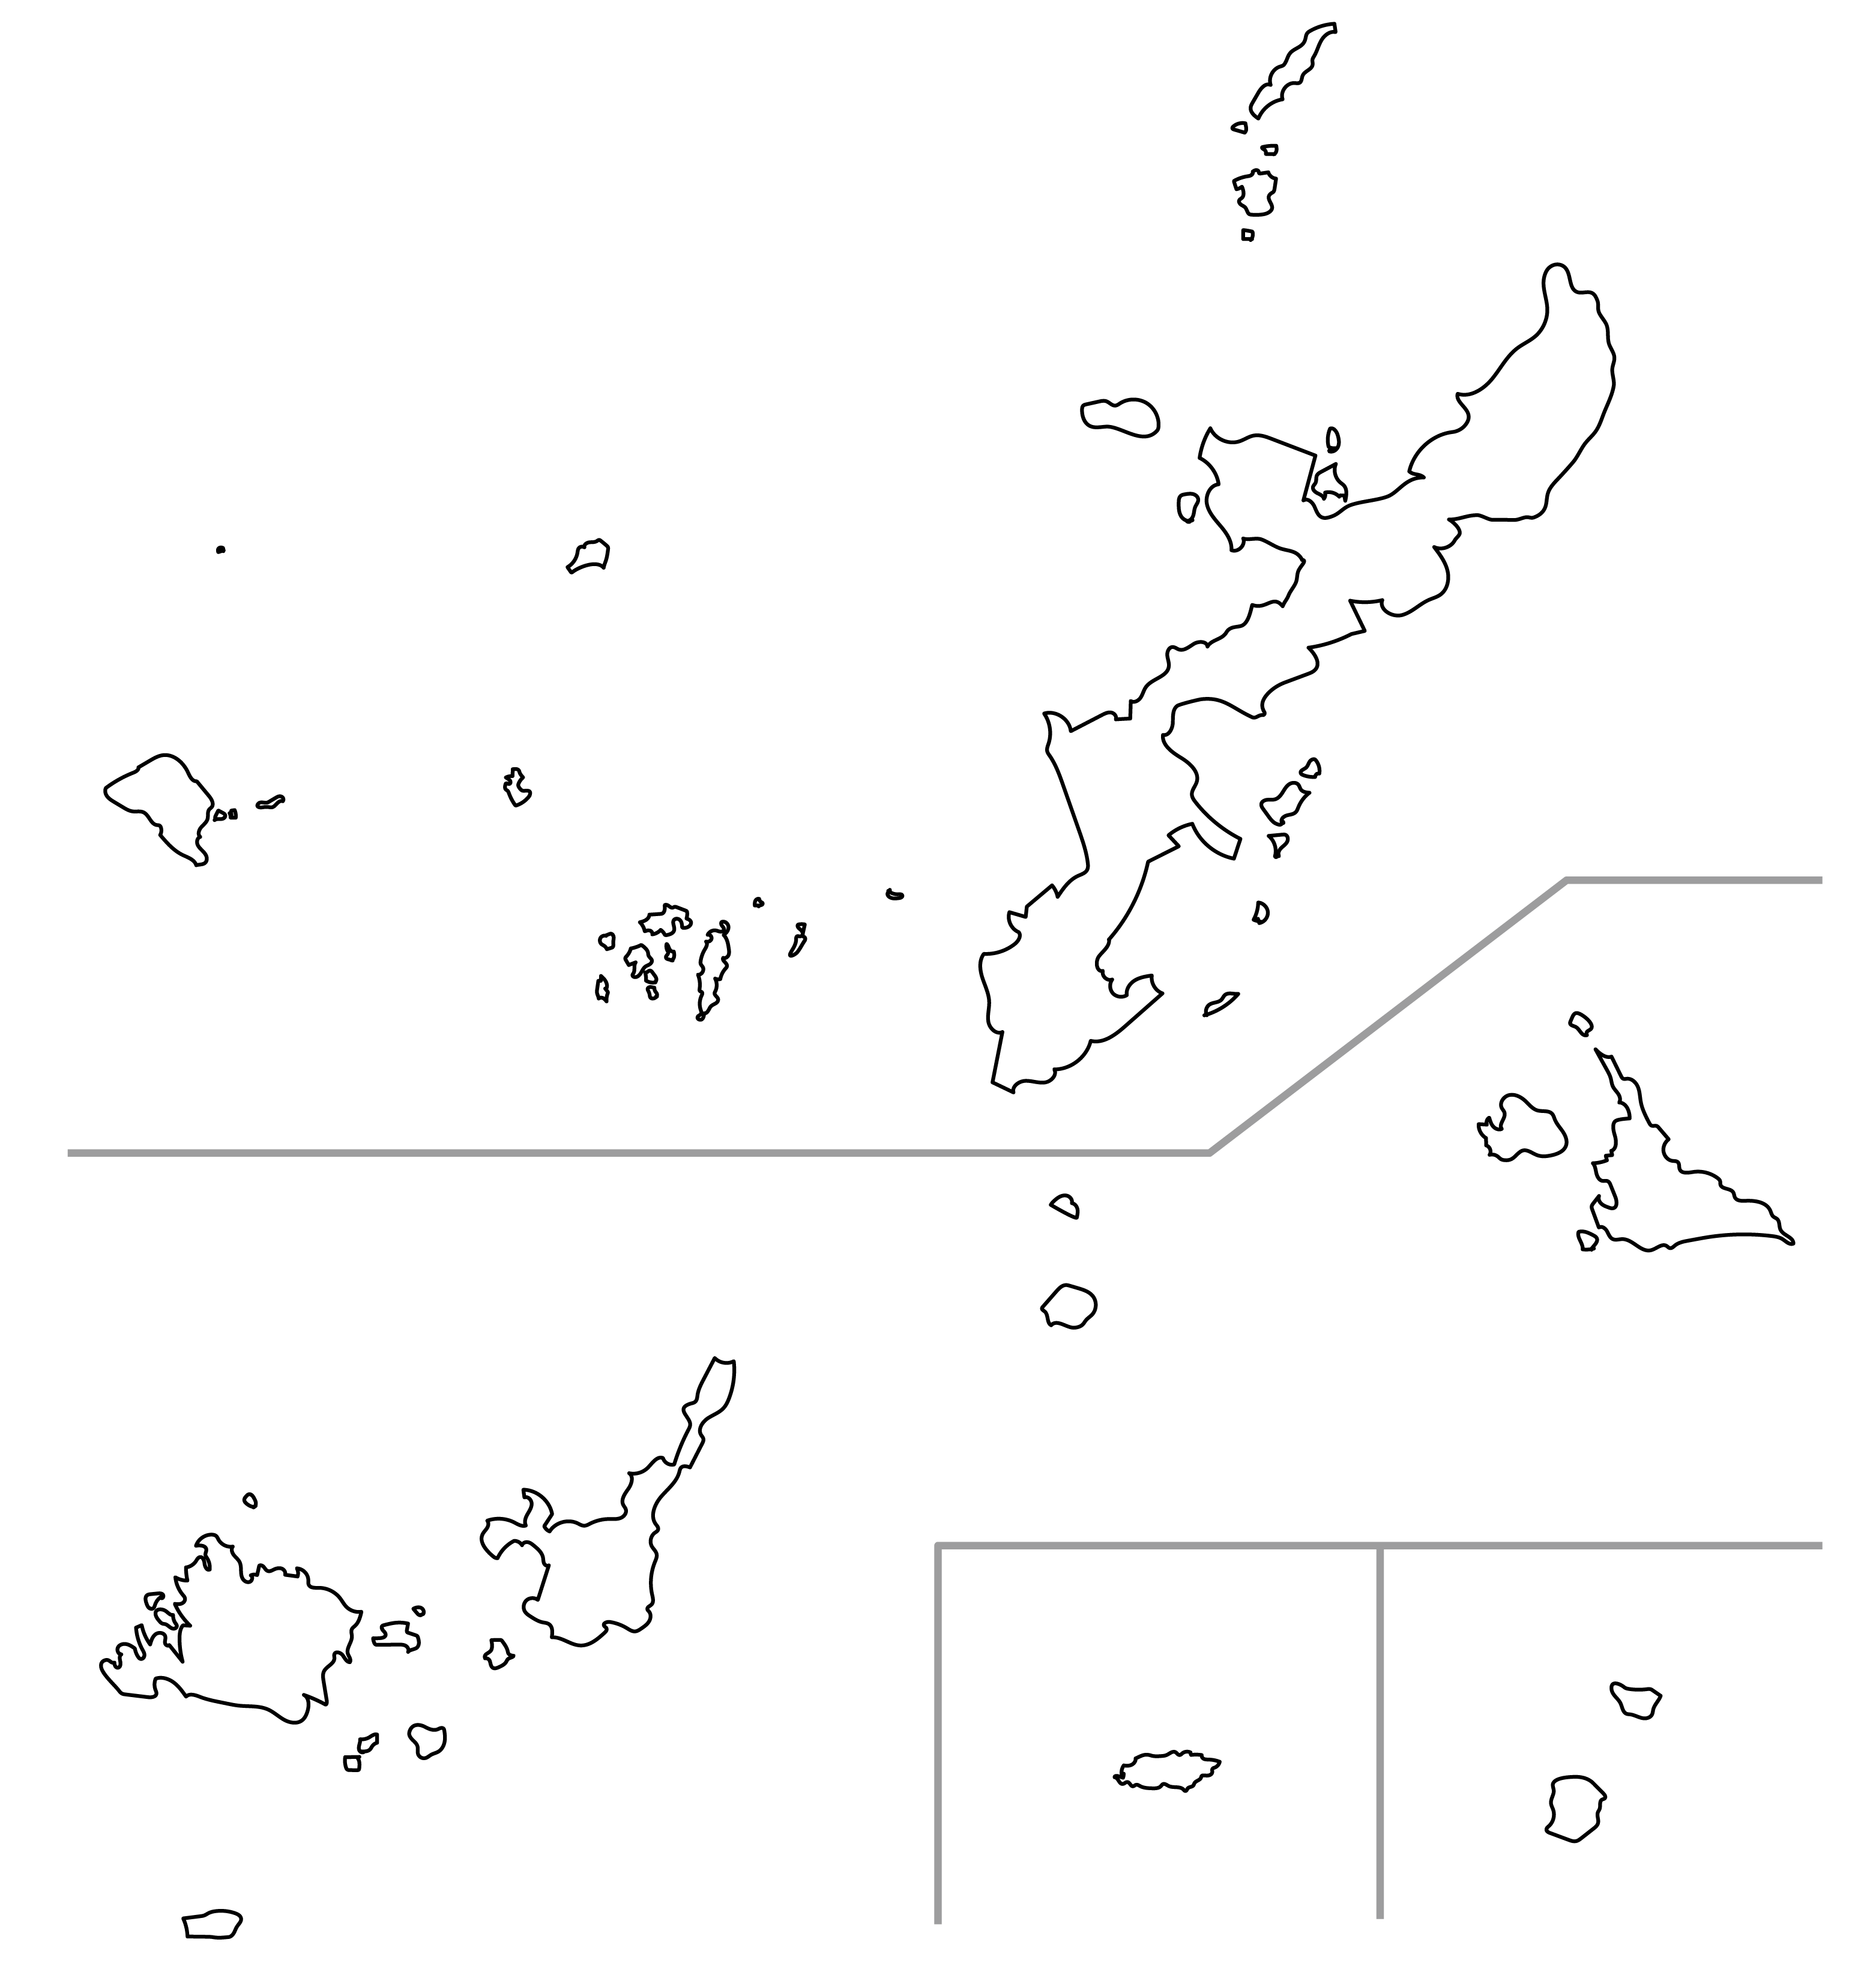 沖縄県の白地図イラスト無料素材集 県庁所在地 市町村名あり